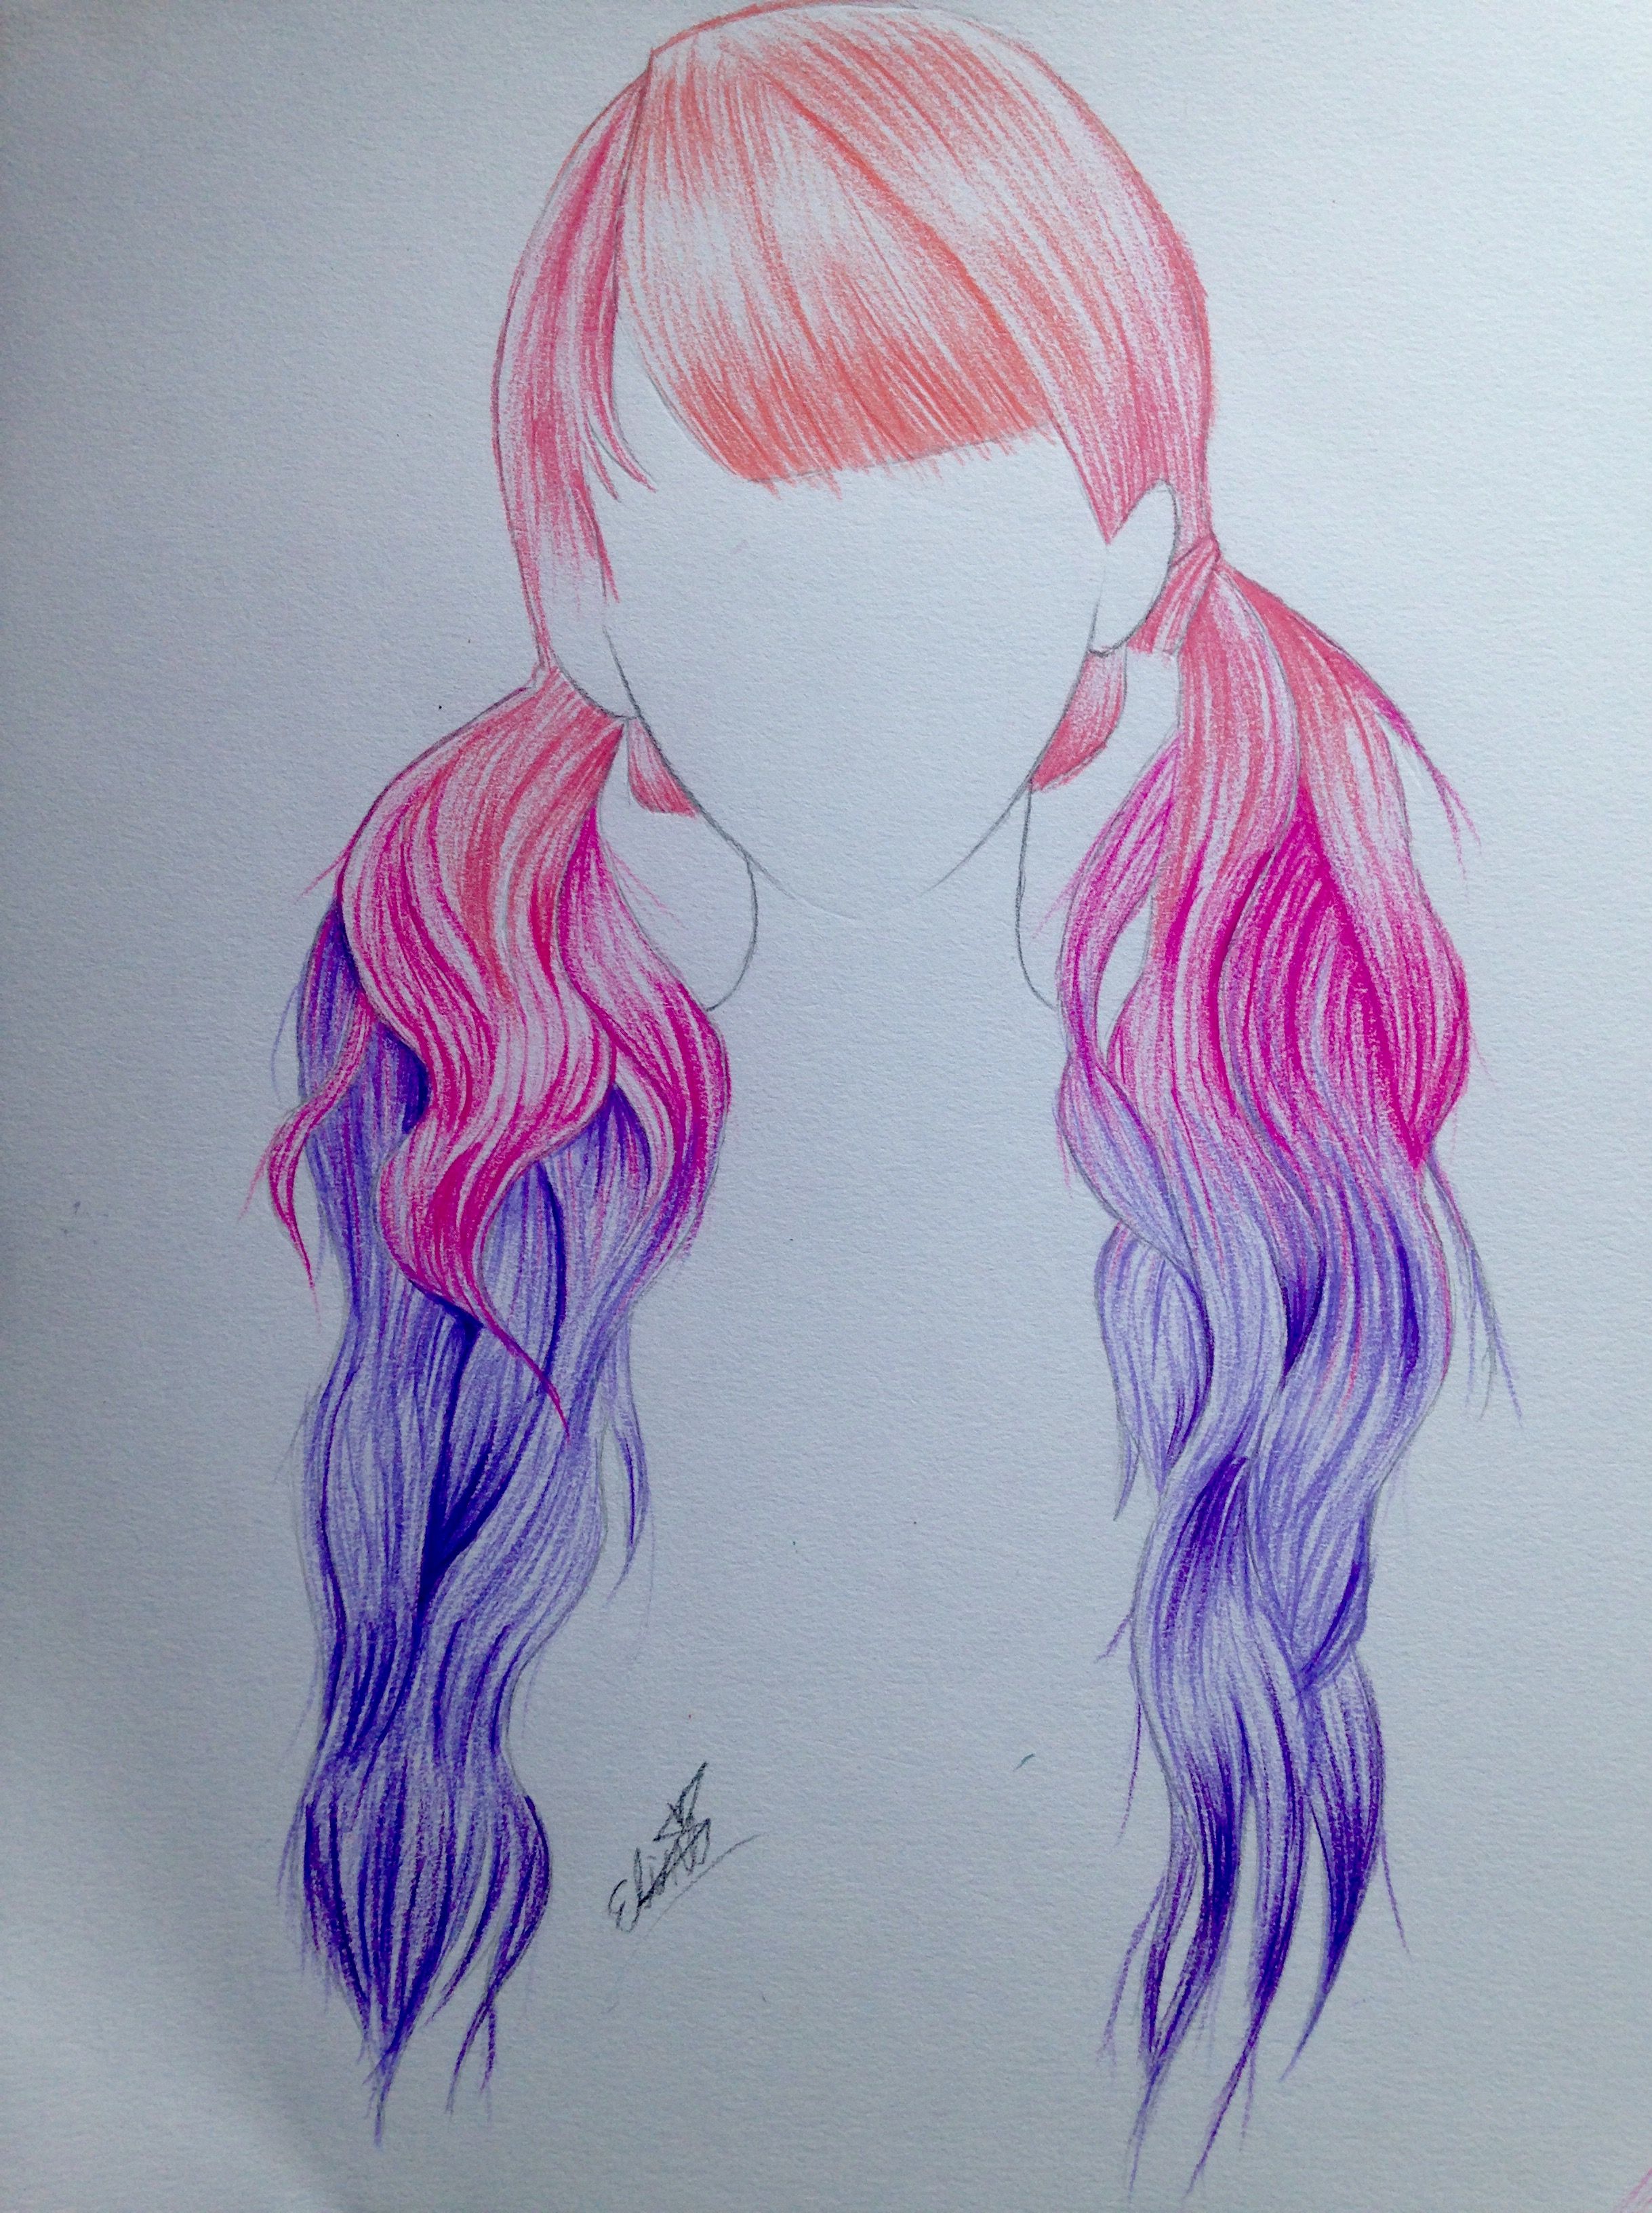 Colorful Hair Drawing Photo - Drawing Skill